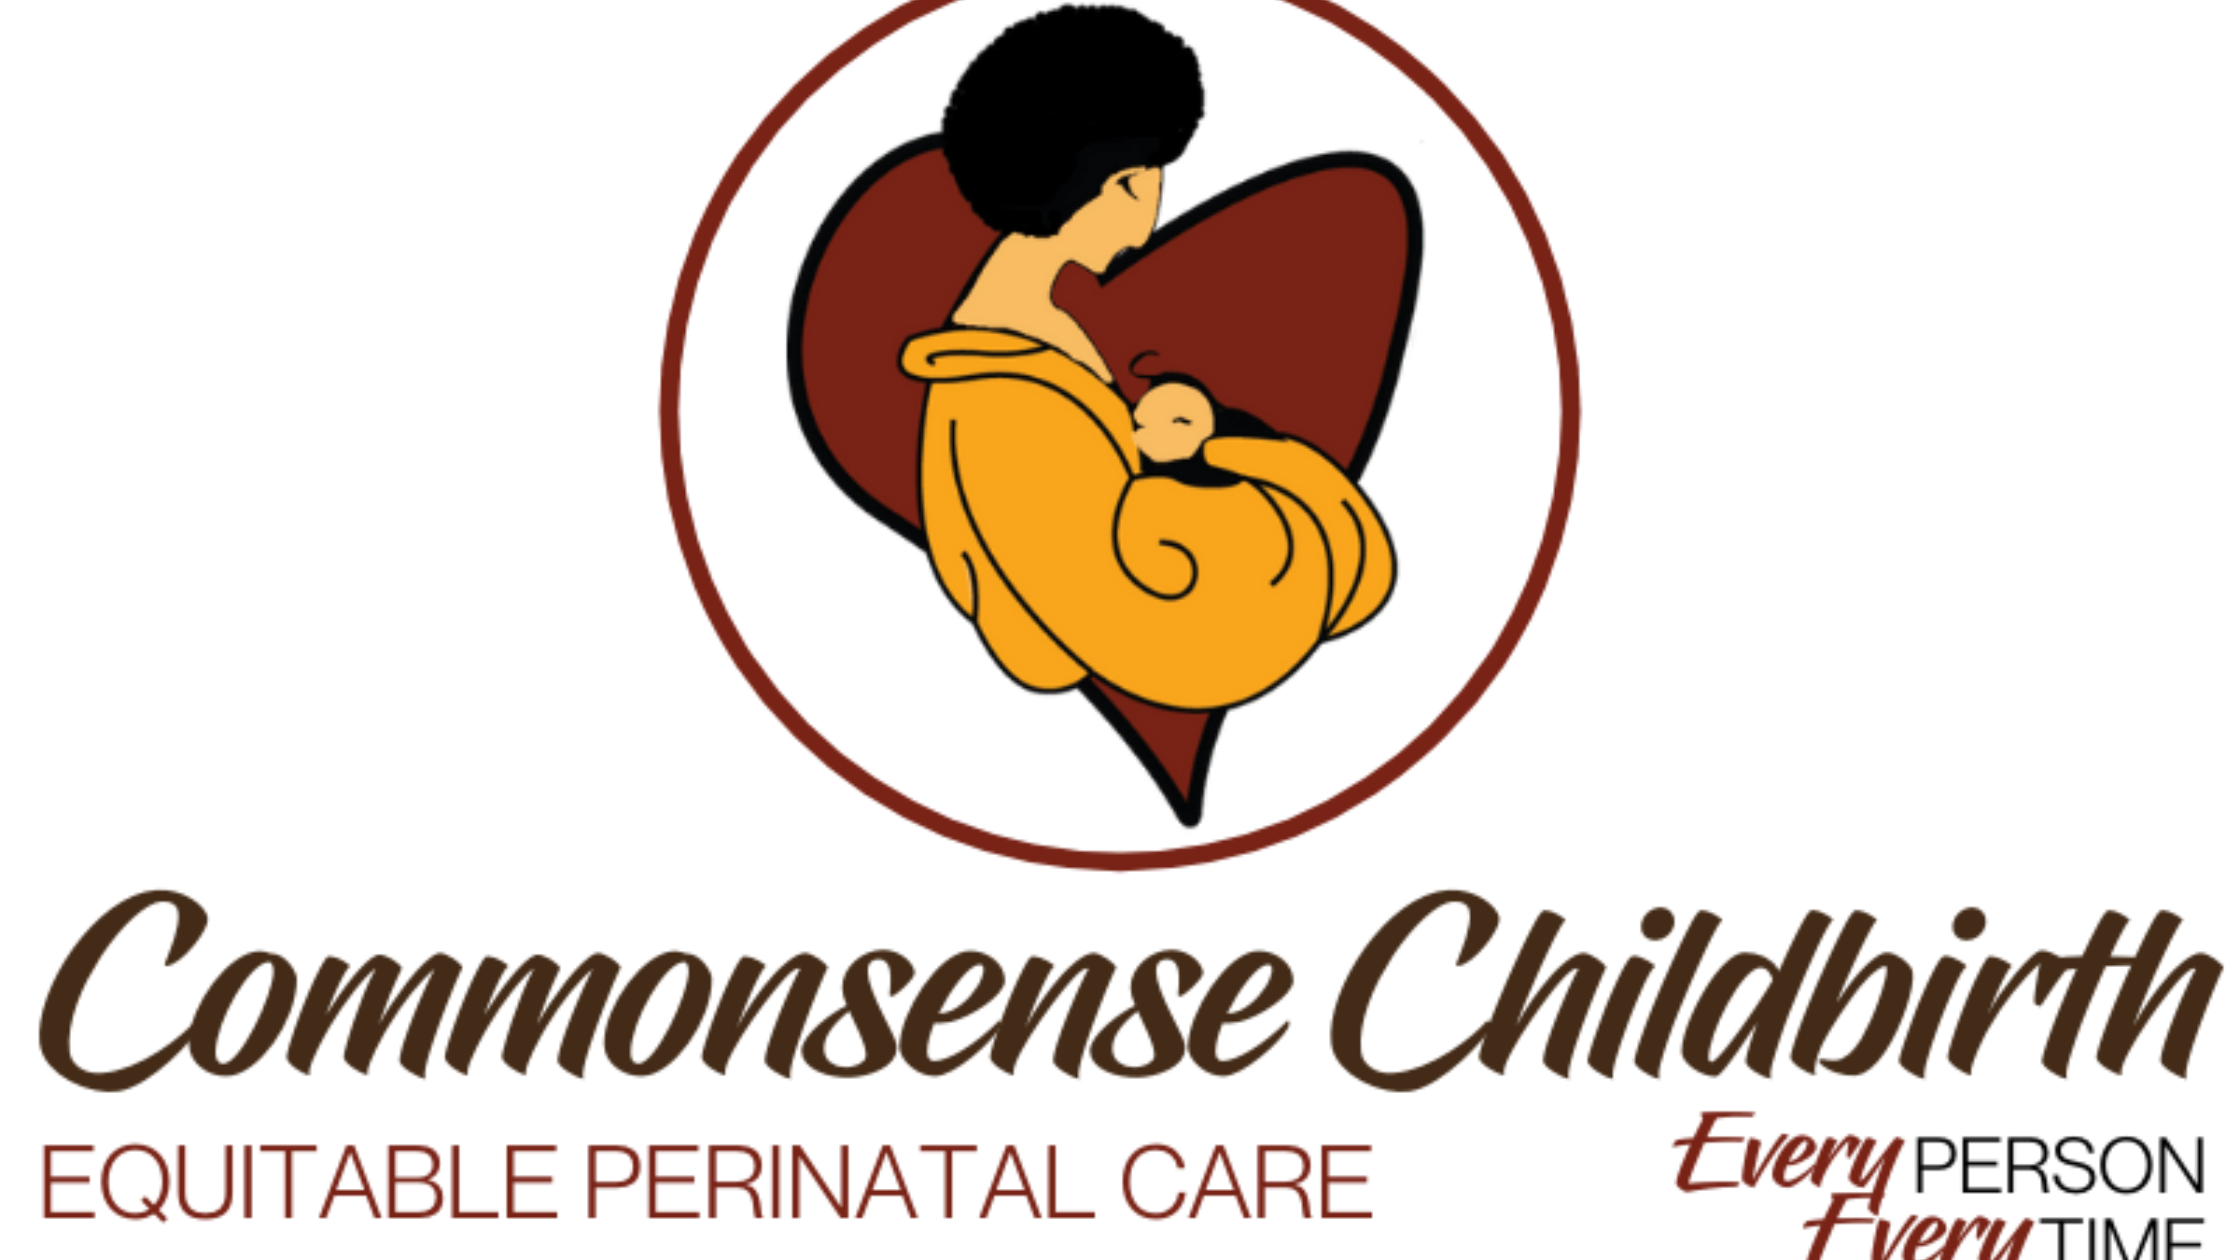 Commonsense Childbirth